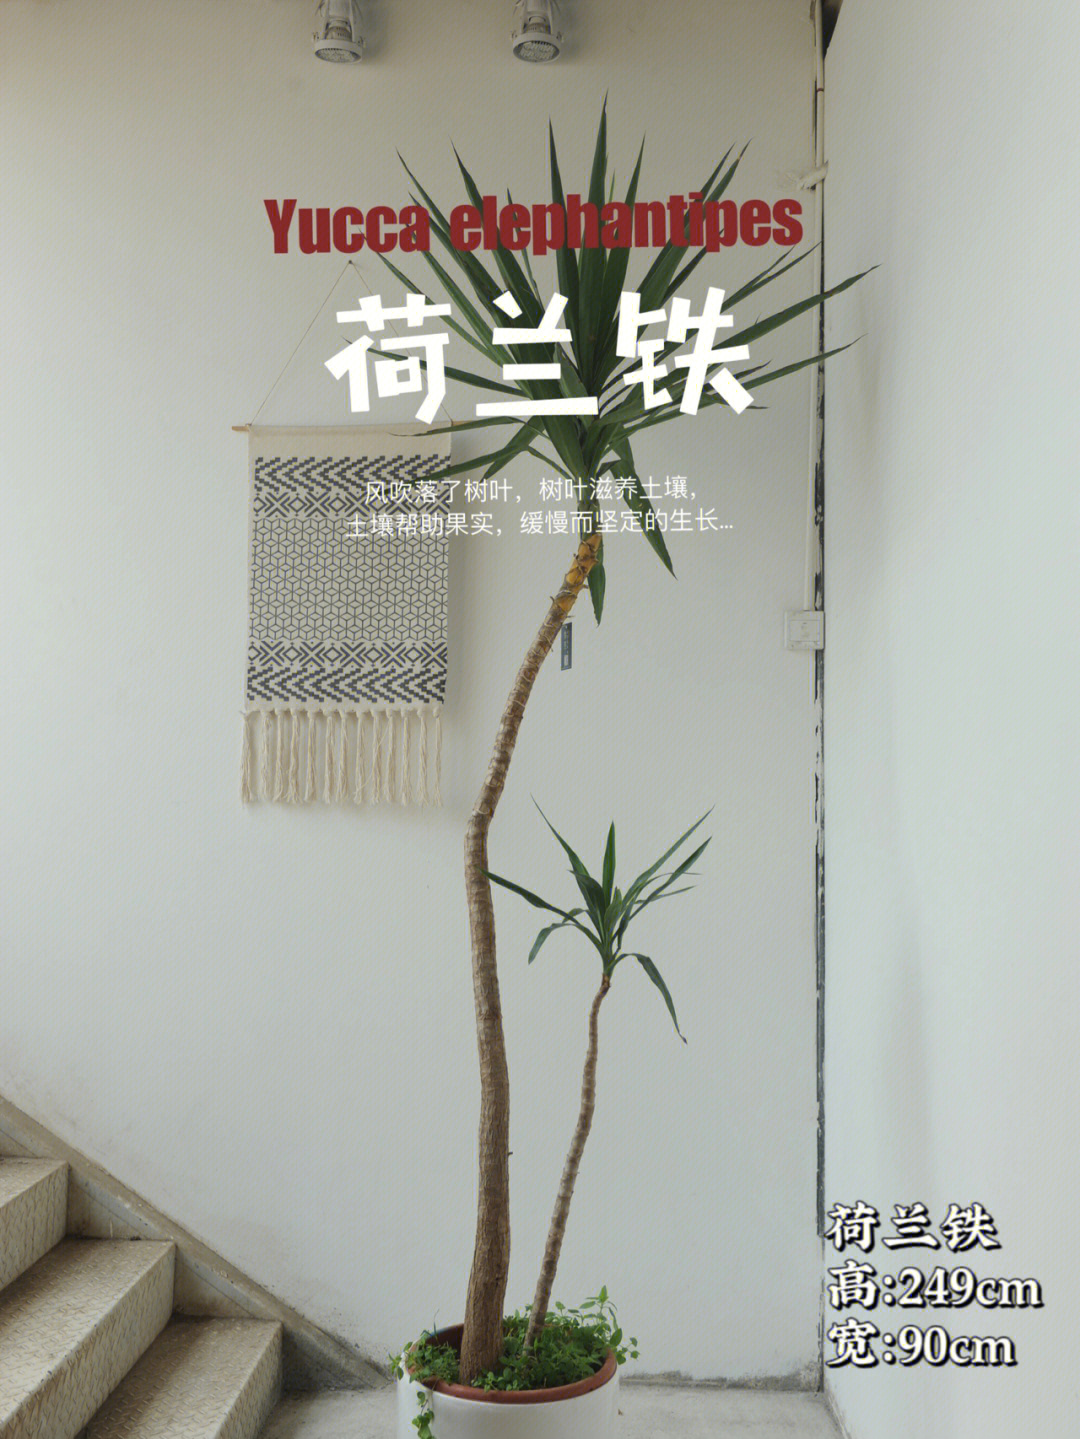 中文学名荷兰铁拉丁学名yucca elephantipes别名巨丝兰,象脚丝兰,无刺